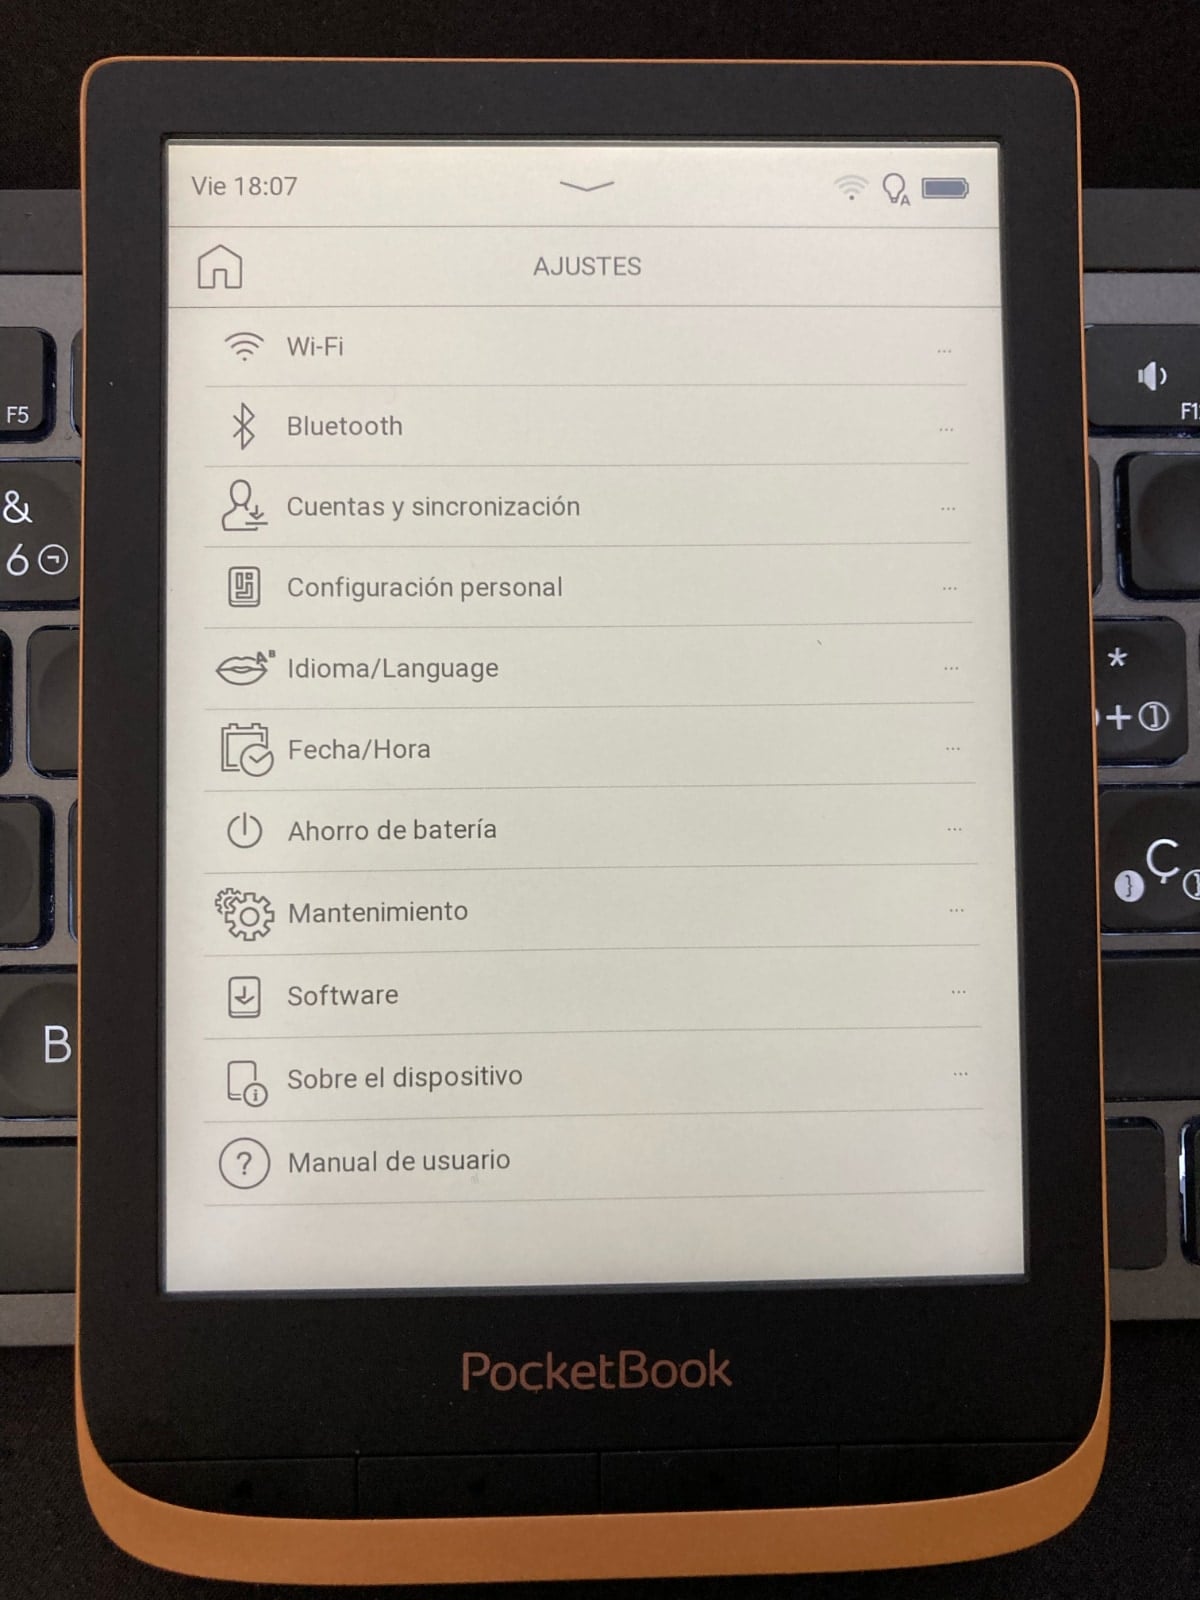 Activar la cuenta de usuario de Adobe en nuestro PocketBook: vamos a Menú General > Ajustes: